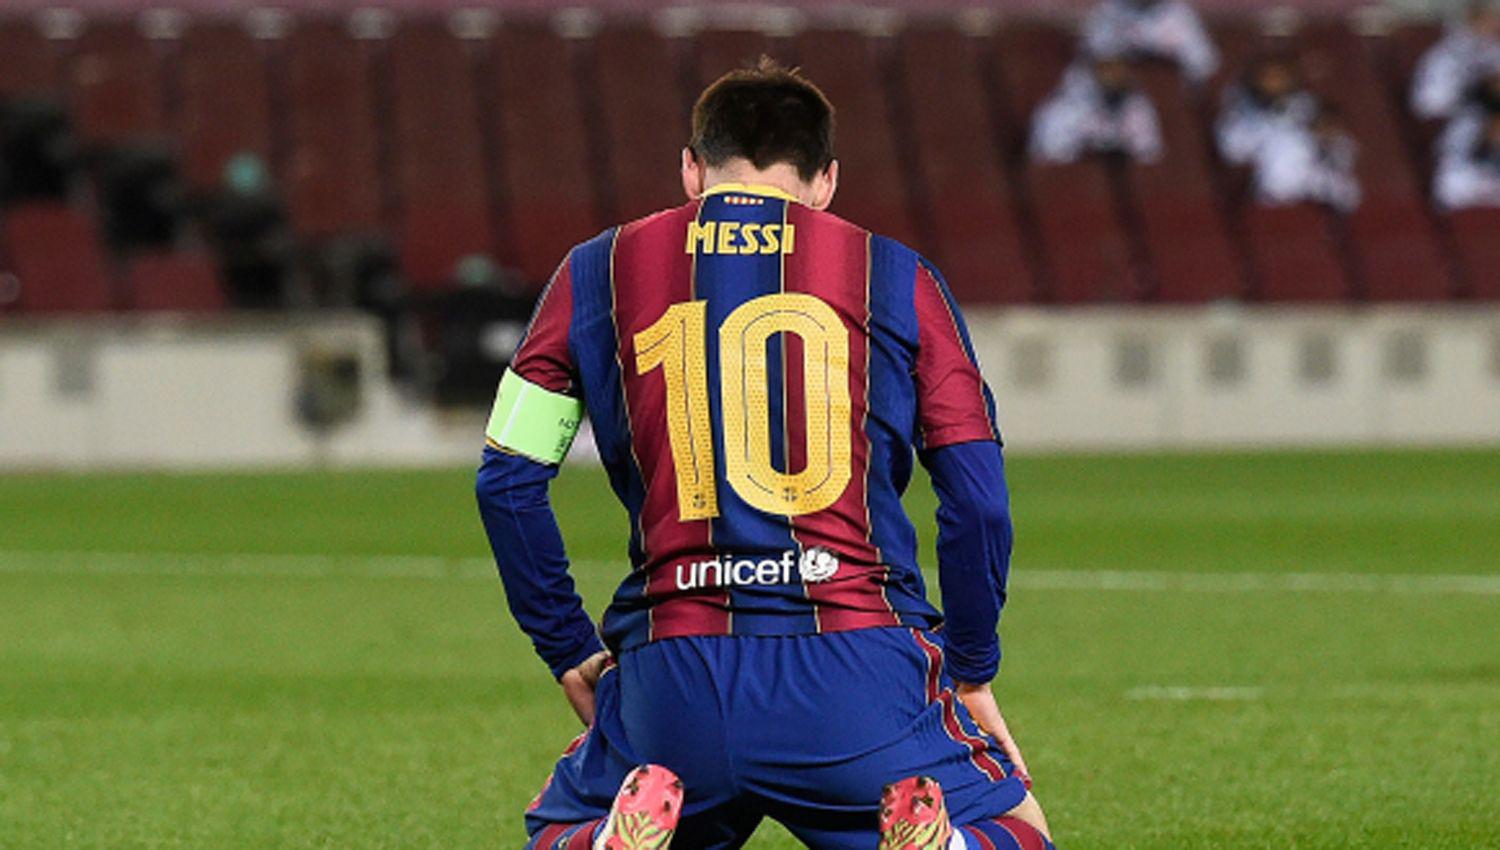 Los detalles de las claacuteusulas especiales que llevaron a Messi a tener el contrato maacutes abultado de la historia